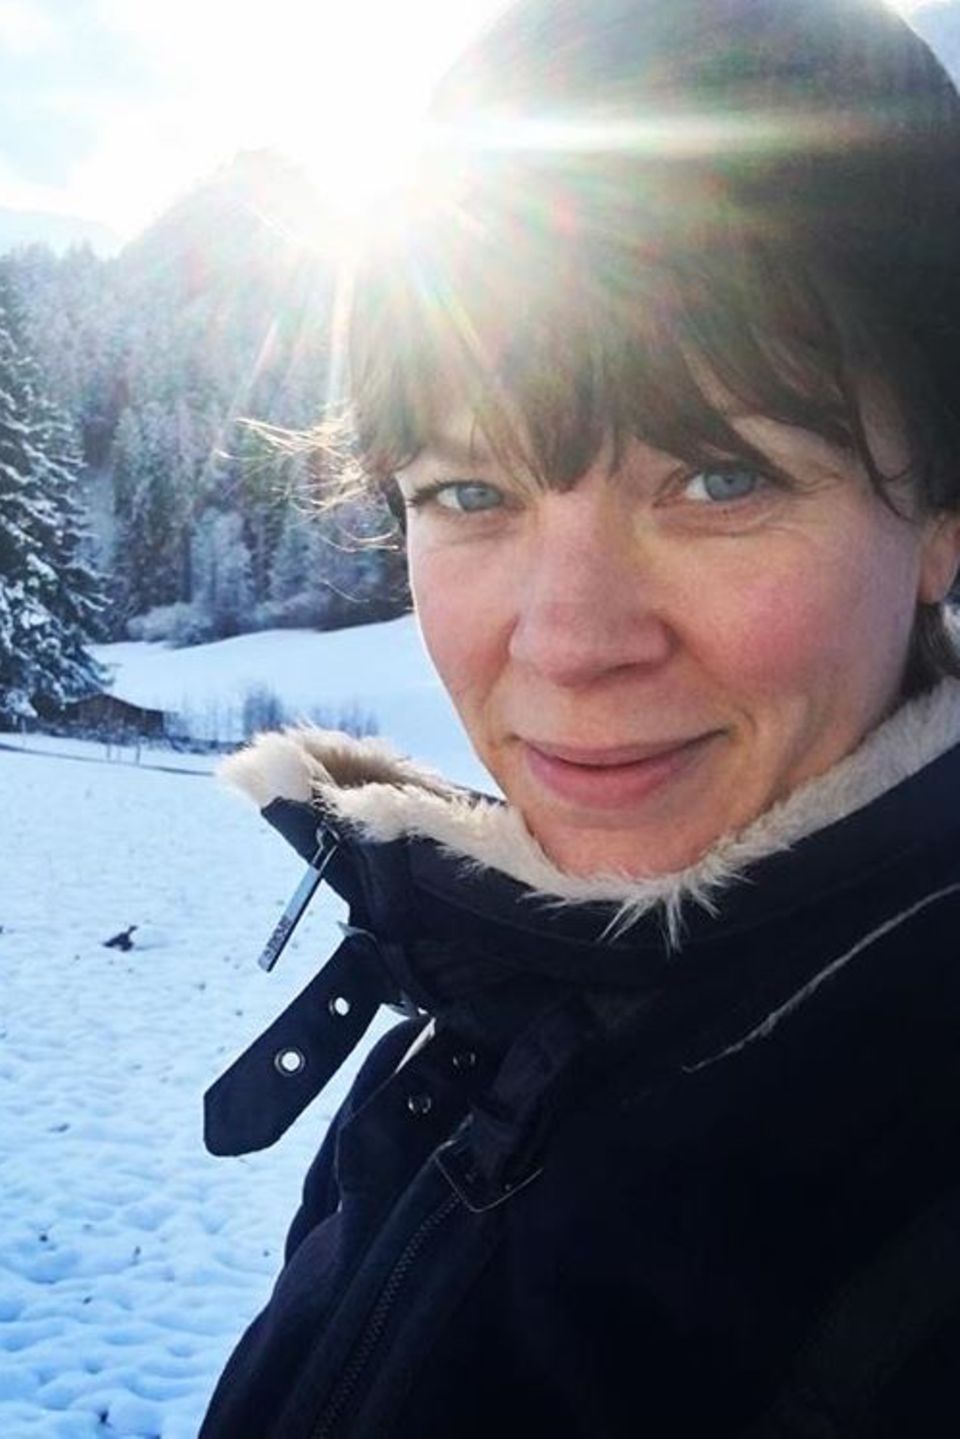 Ein Selfie vor verschneiter Traumkulisse. Schauspielerin Jessica Schwarz genießt die kalte, klare Schneeluft.